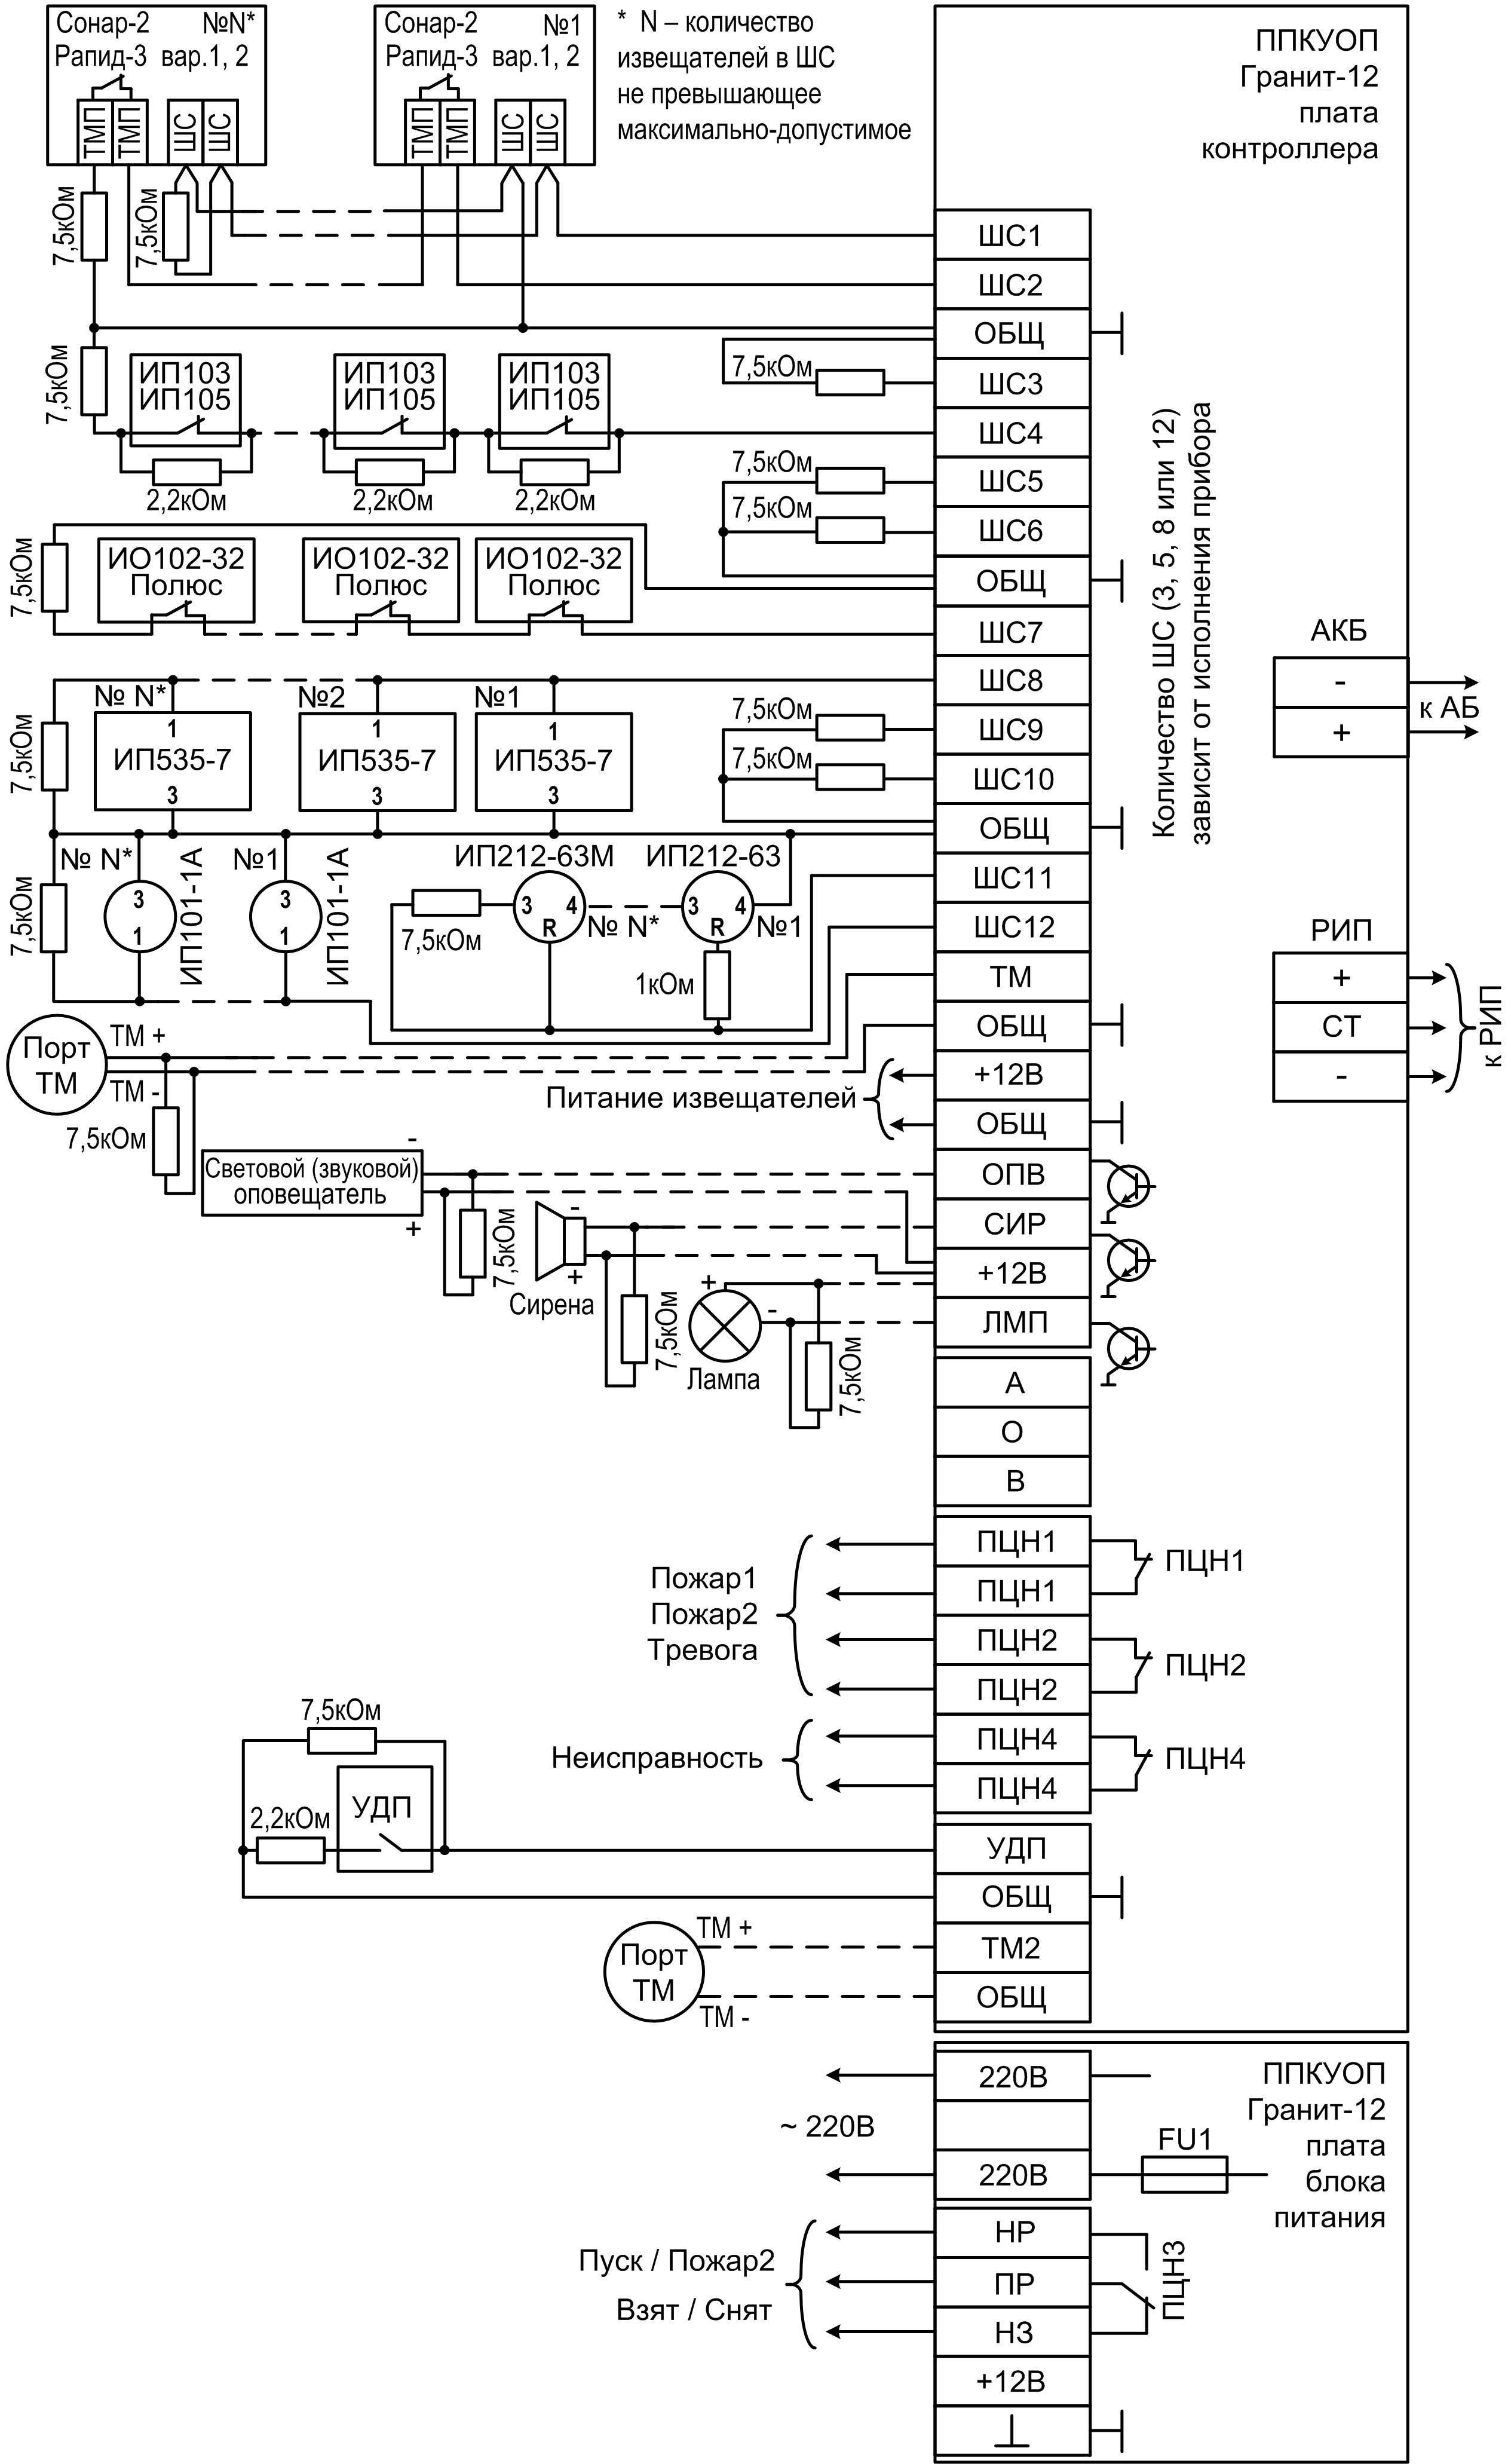 Схема подключения Гранит-3